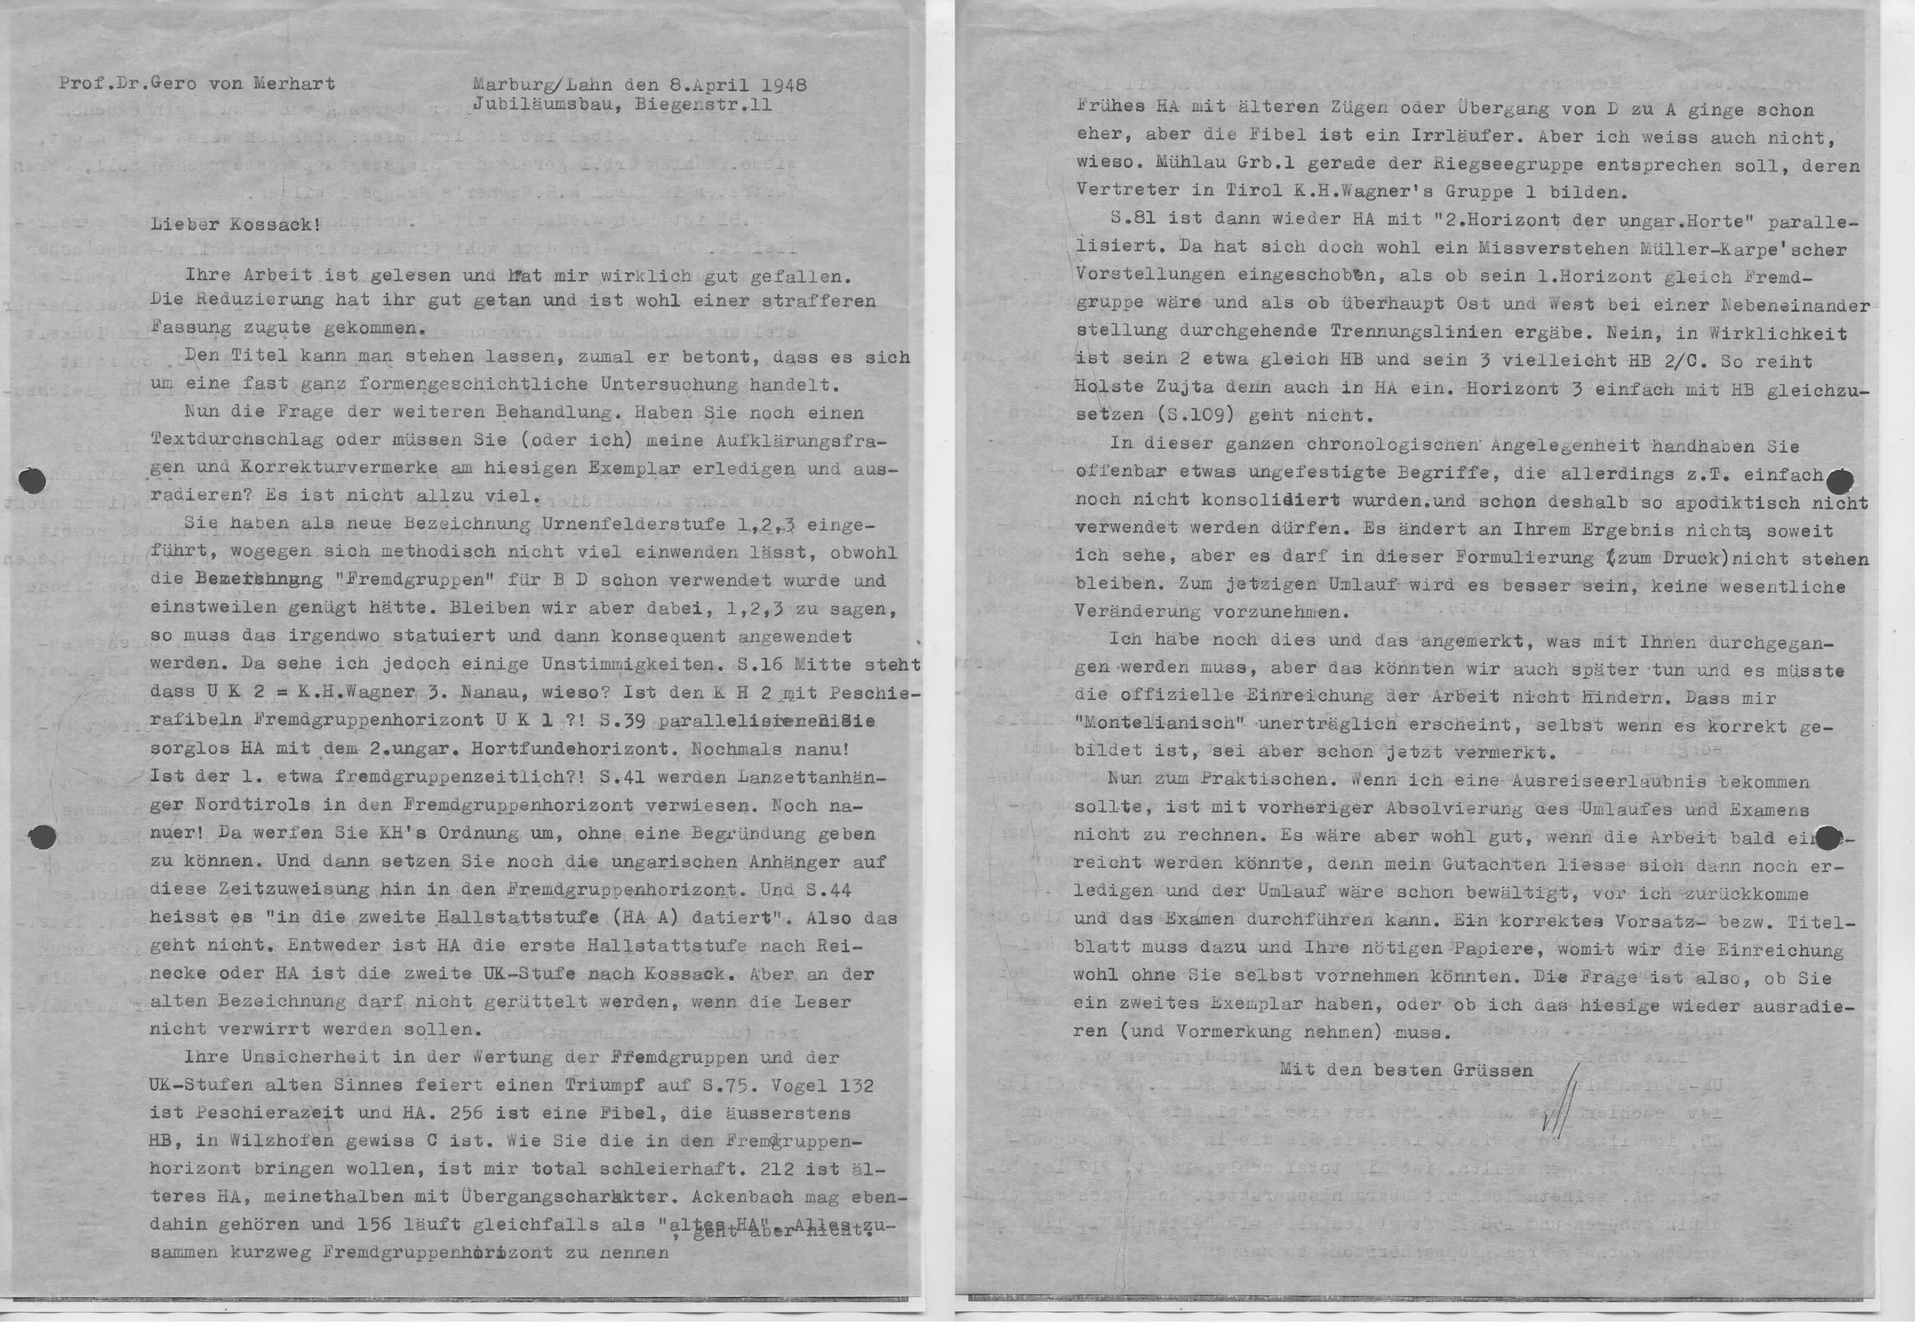 08.04.1948 - Merhart an Kossack_2_Seite_1.jpg